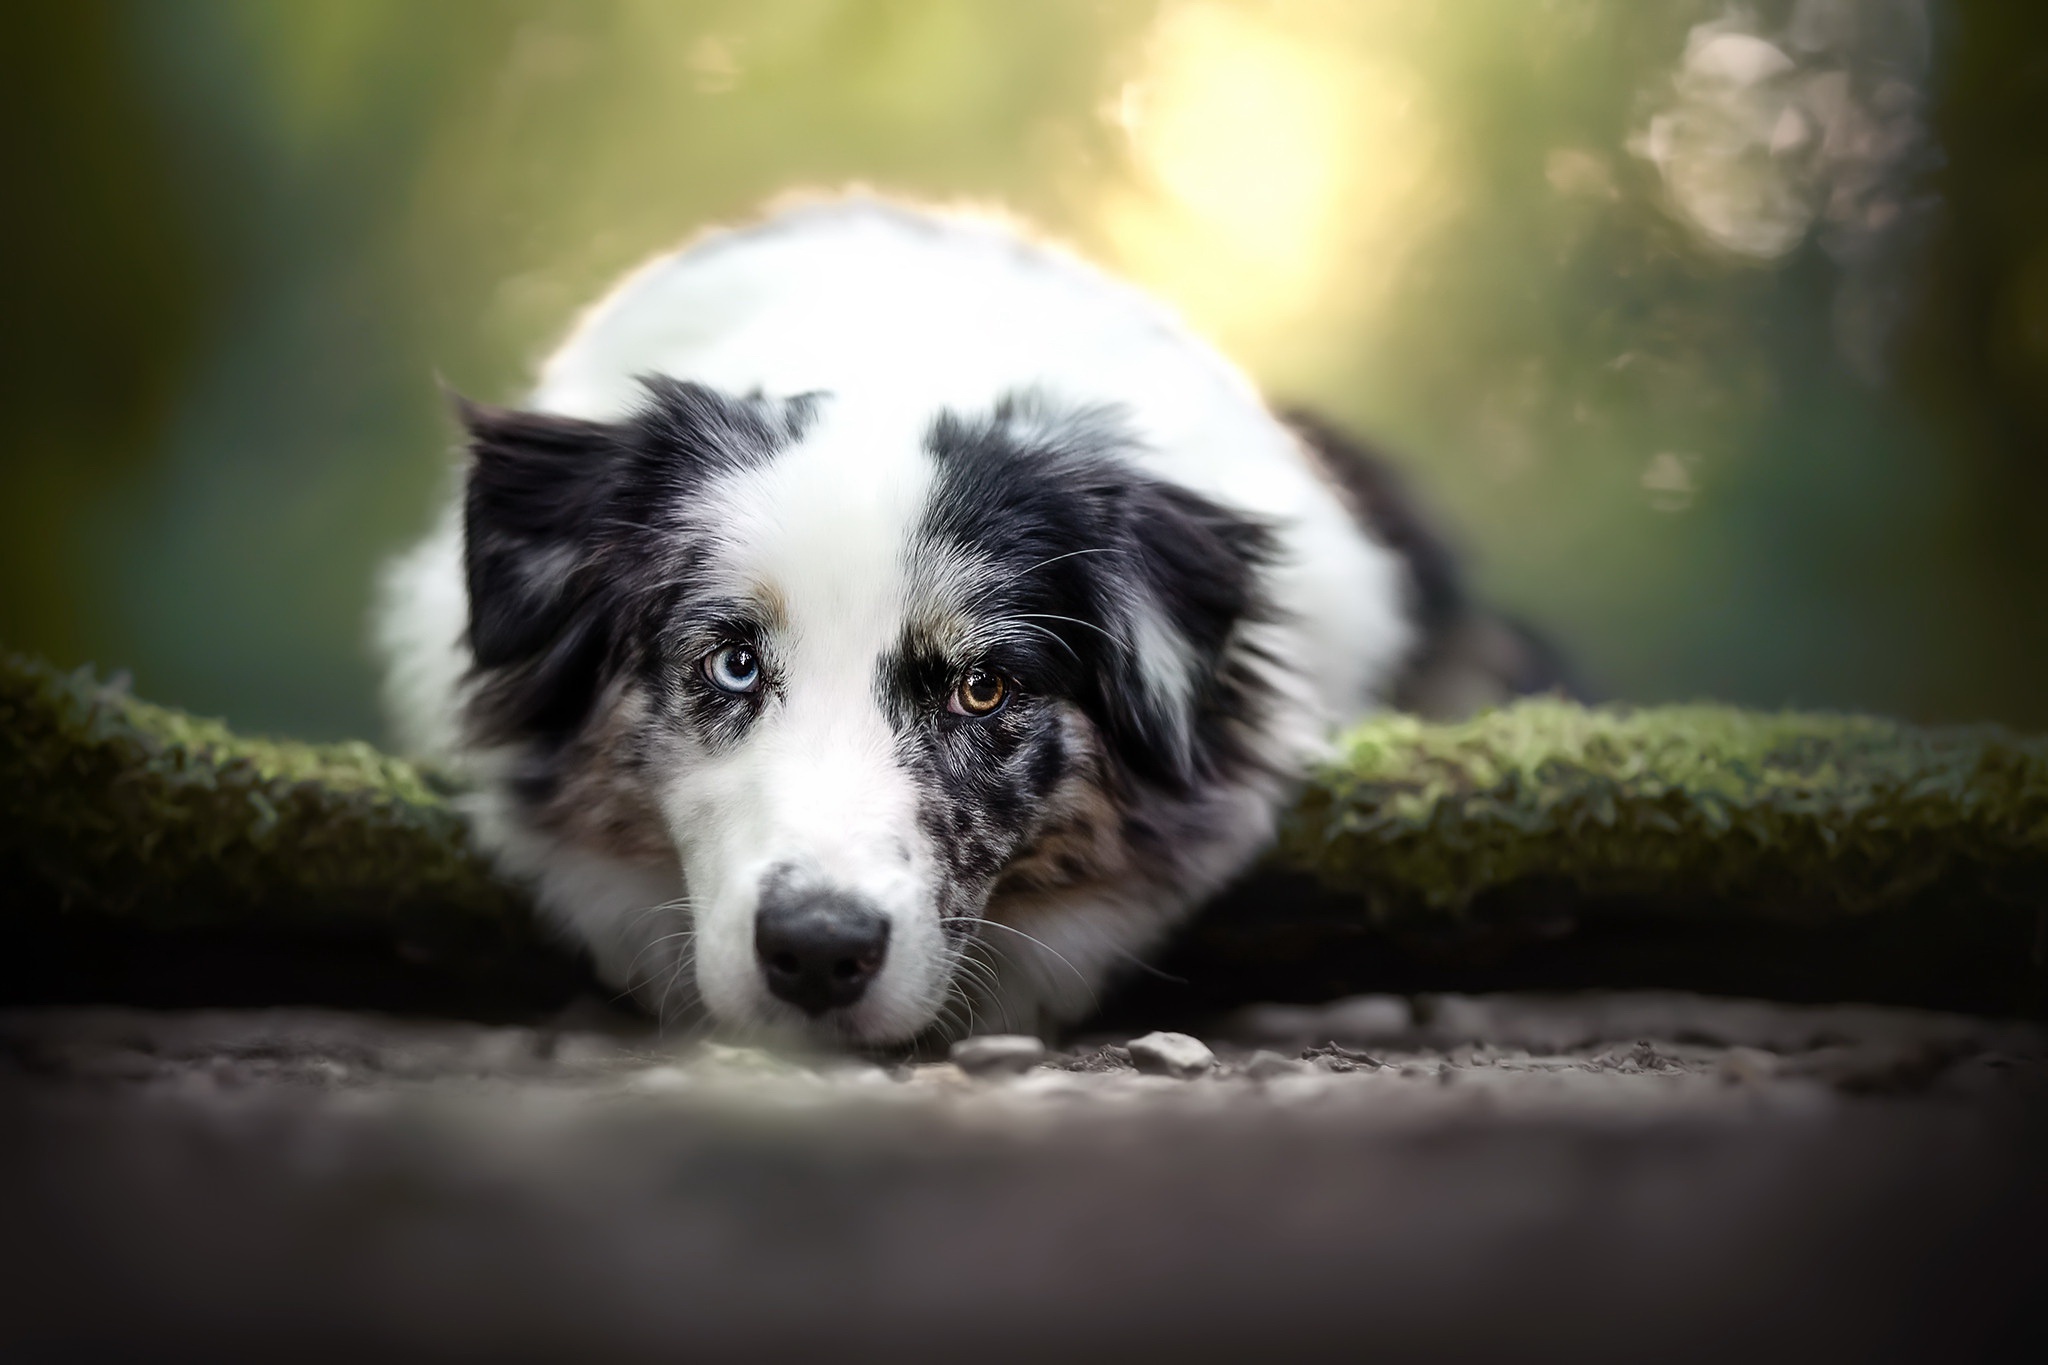 Download mobile wallpaper Dogs, Dog, Animal, Australian Shepherd for free.